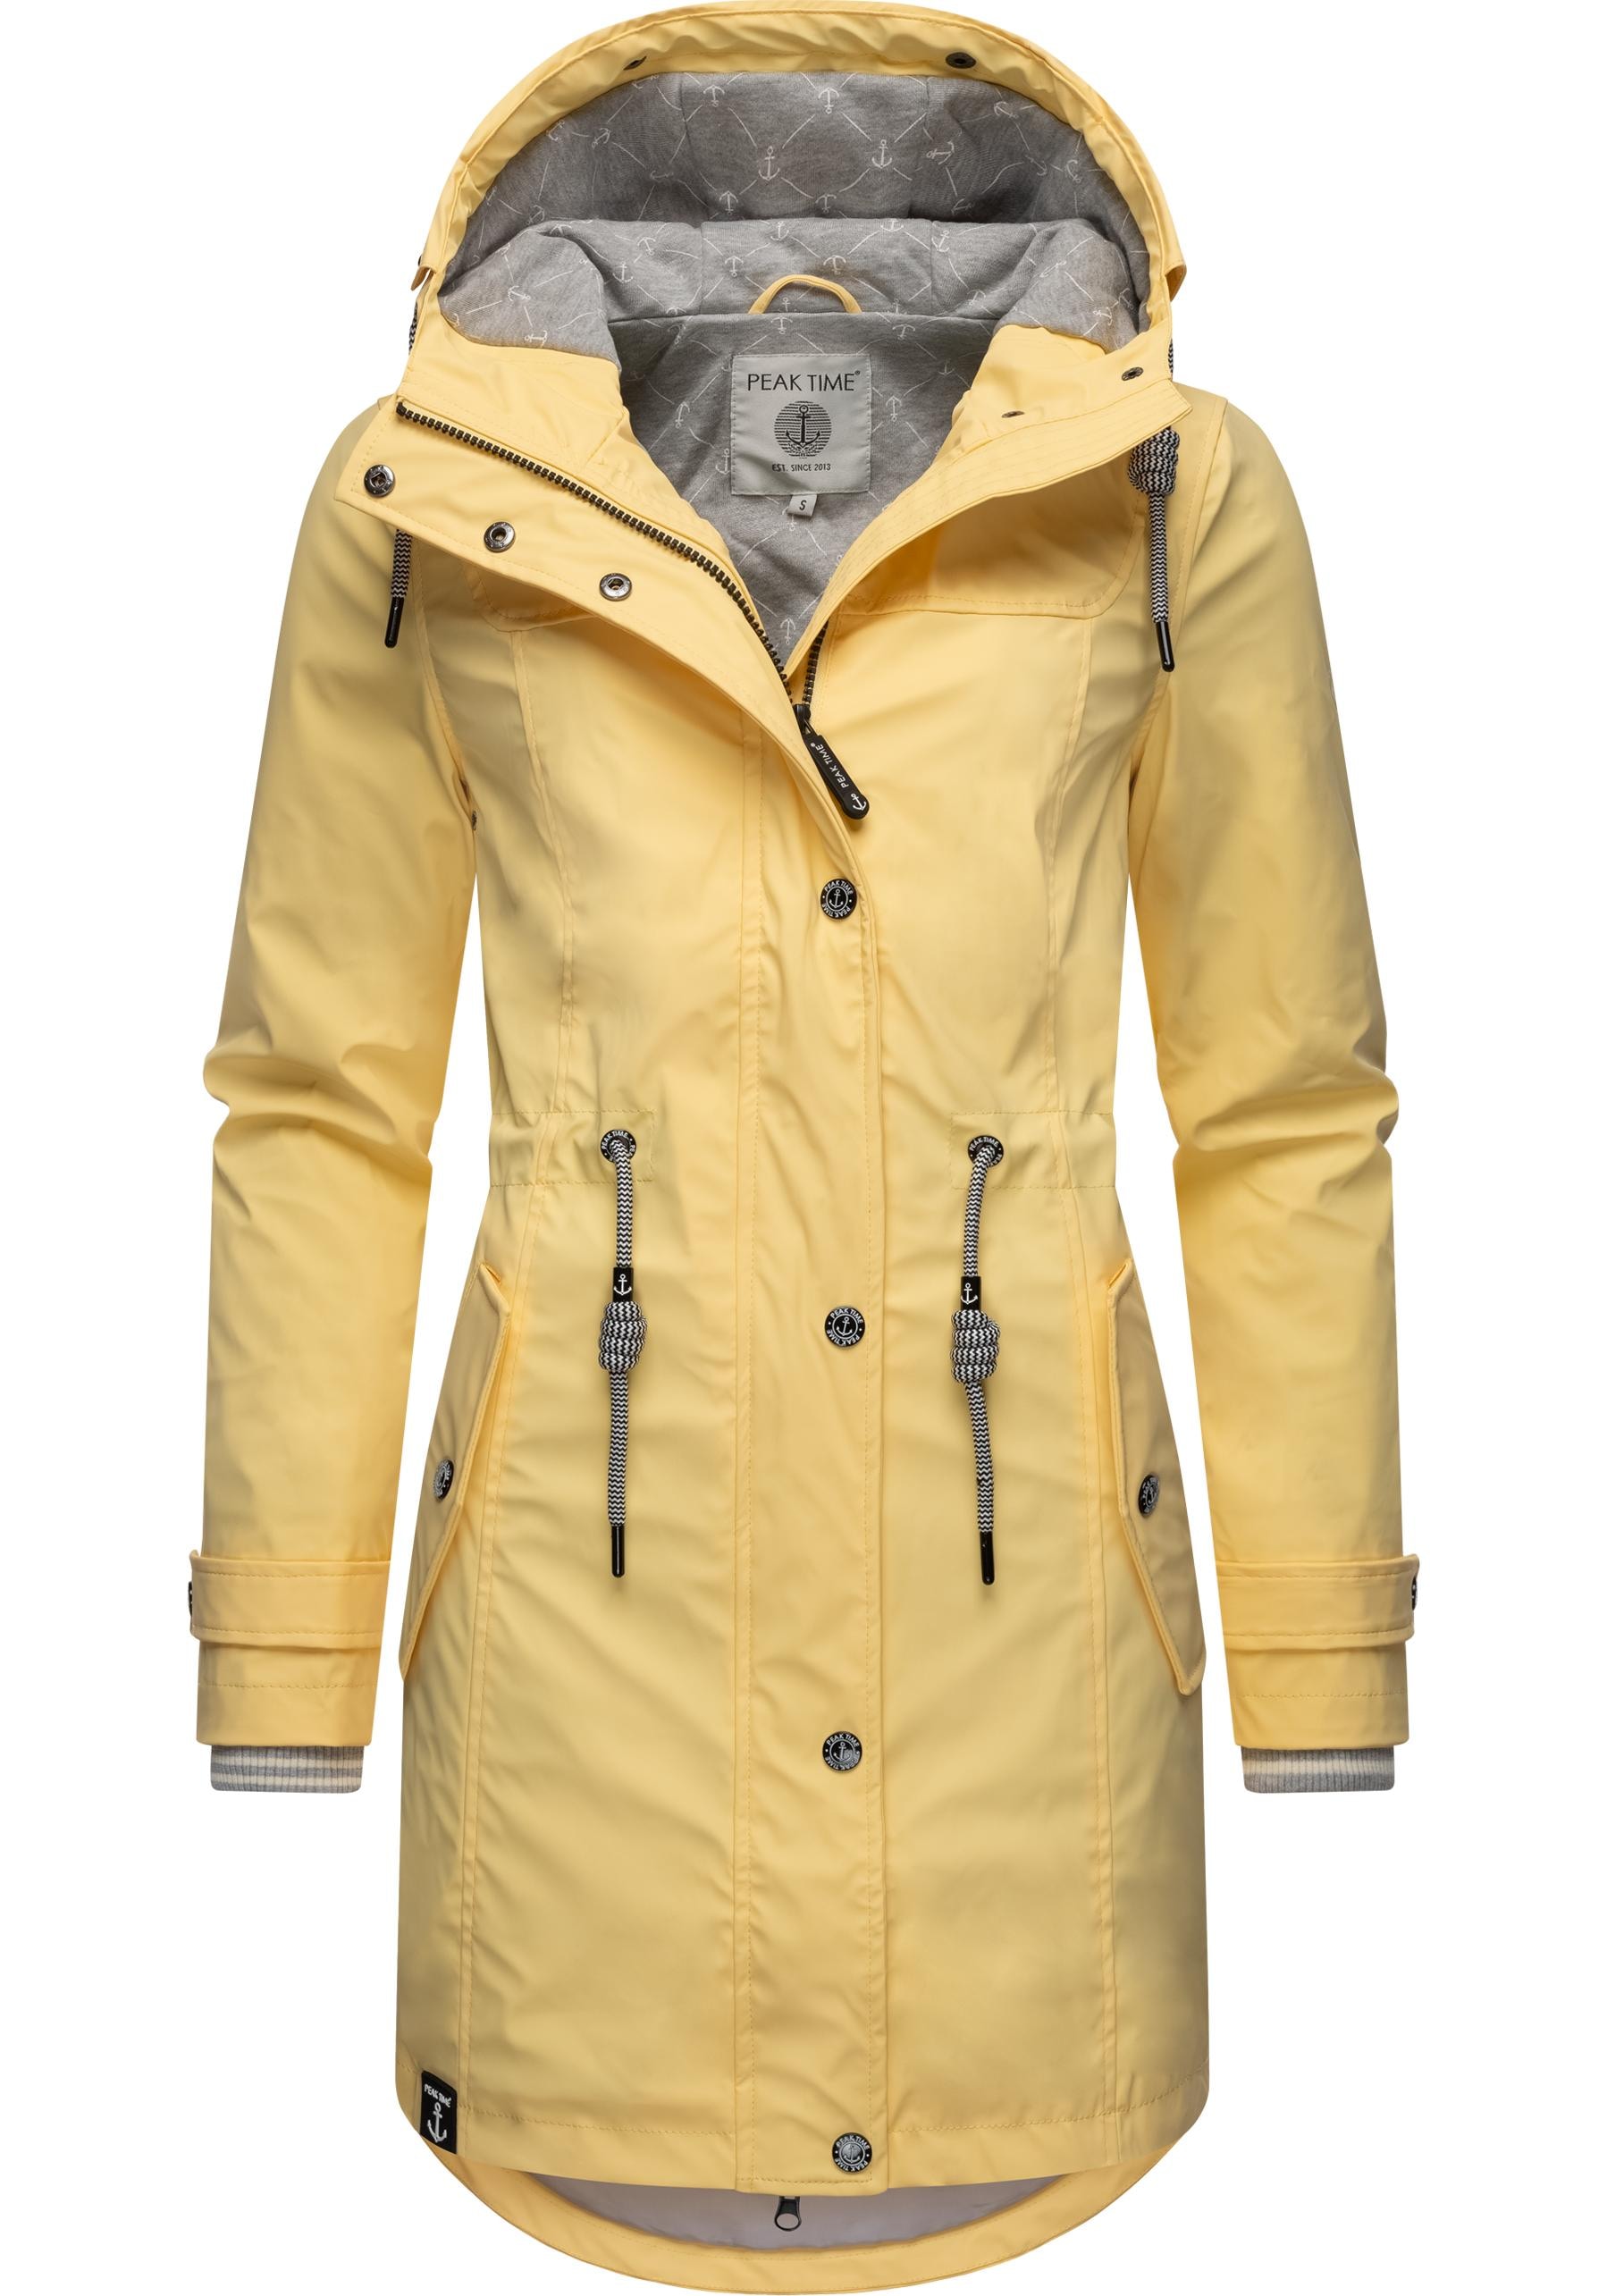 PEAK TIME Regenjacke stylisch für Kapuze, taillierter »L60042«, Damen shoppen Regenmantel mit